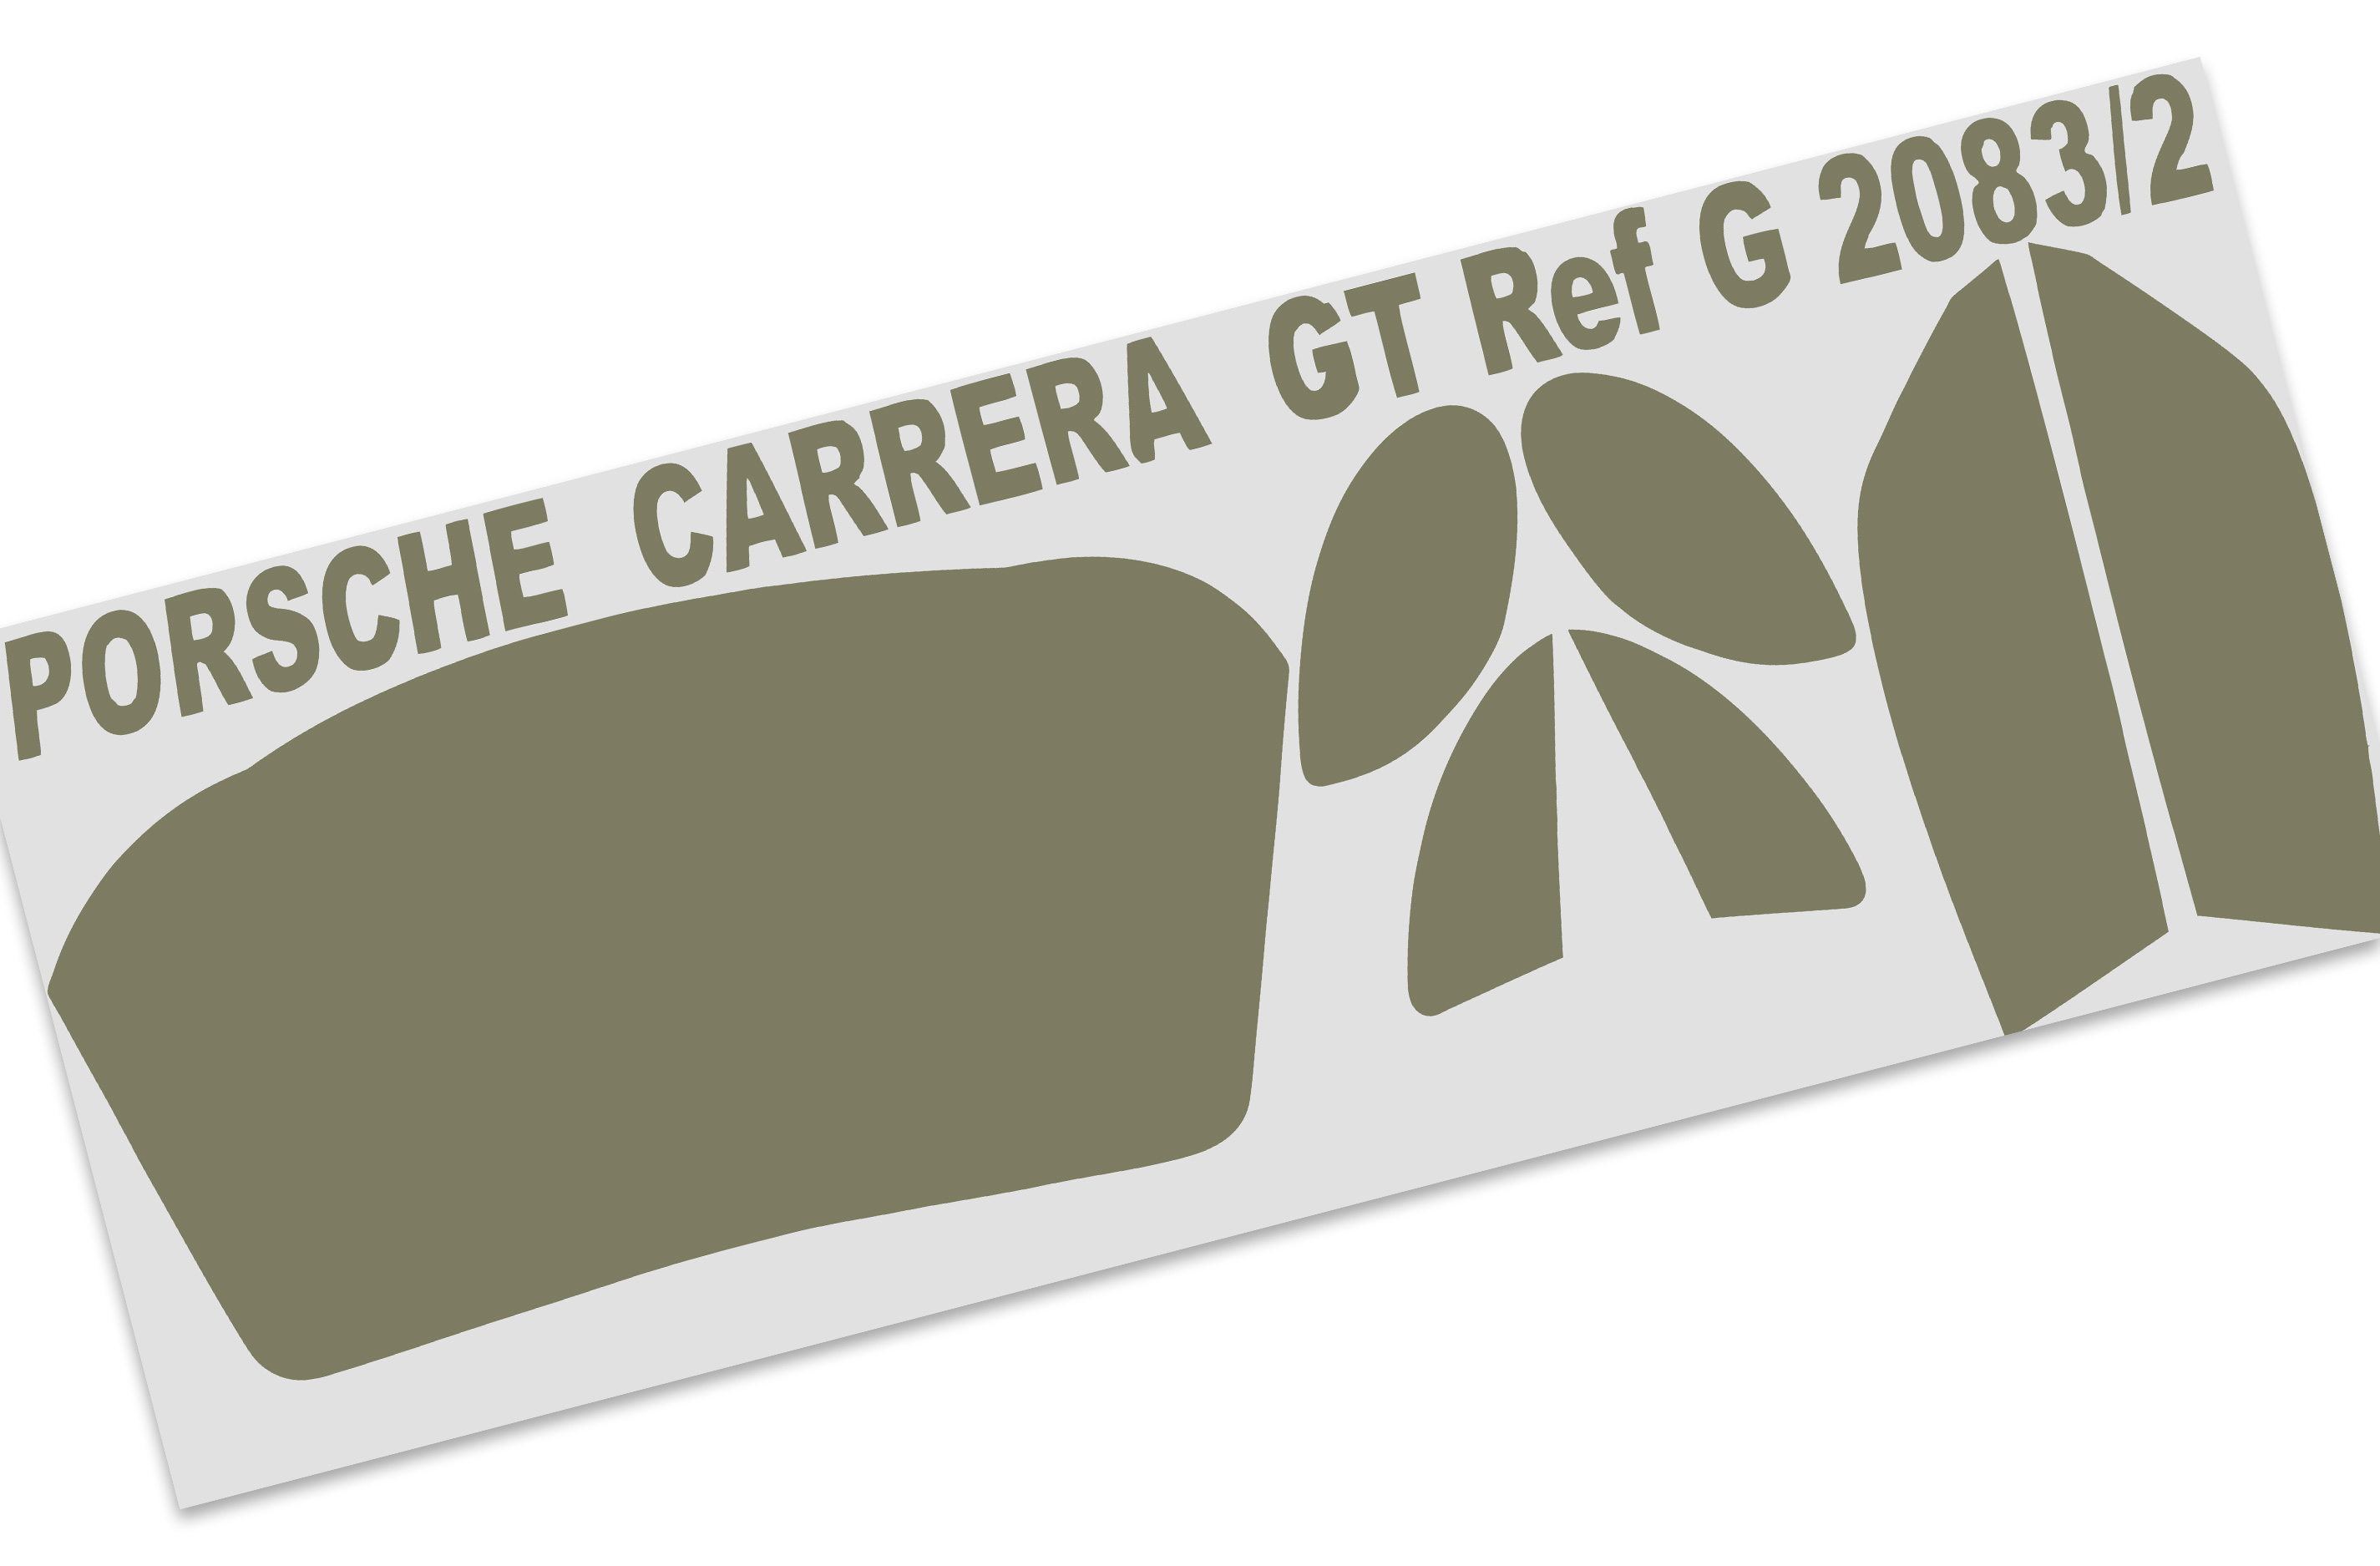 2083/02 FG Window masking stickers Porsche Carrera GT